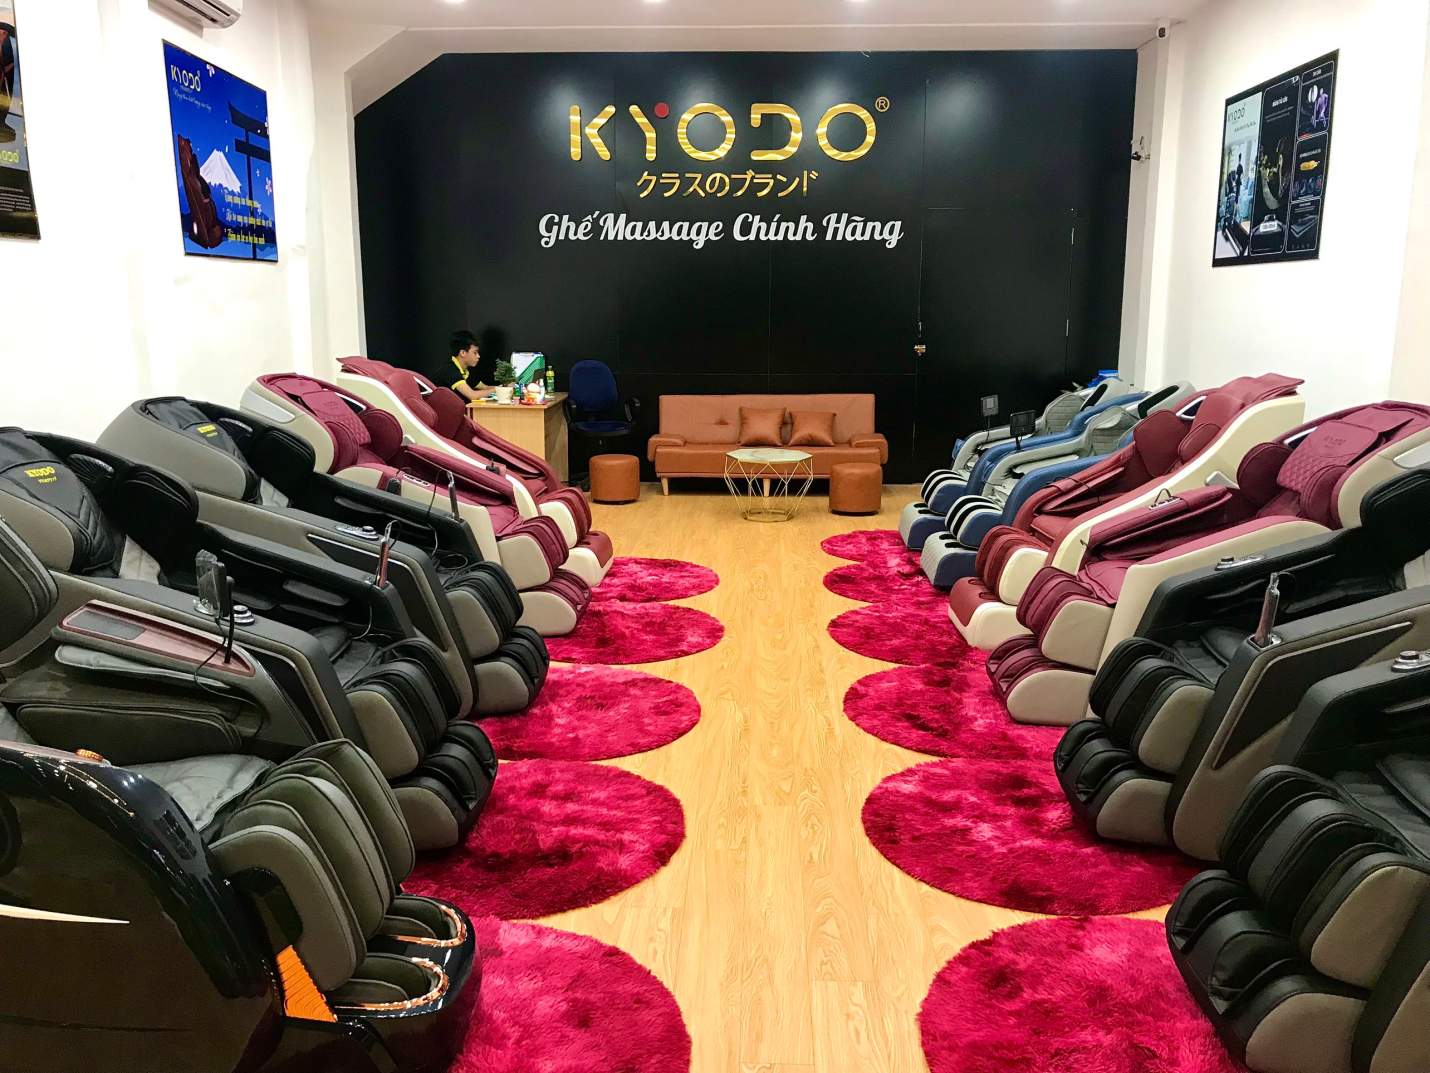 Ghế massage chính hãng KYODO Mẹo lựa chọn sản phẩm chăm sóc sức khoẻ cả gia đình - Ảnh 1.